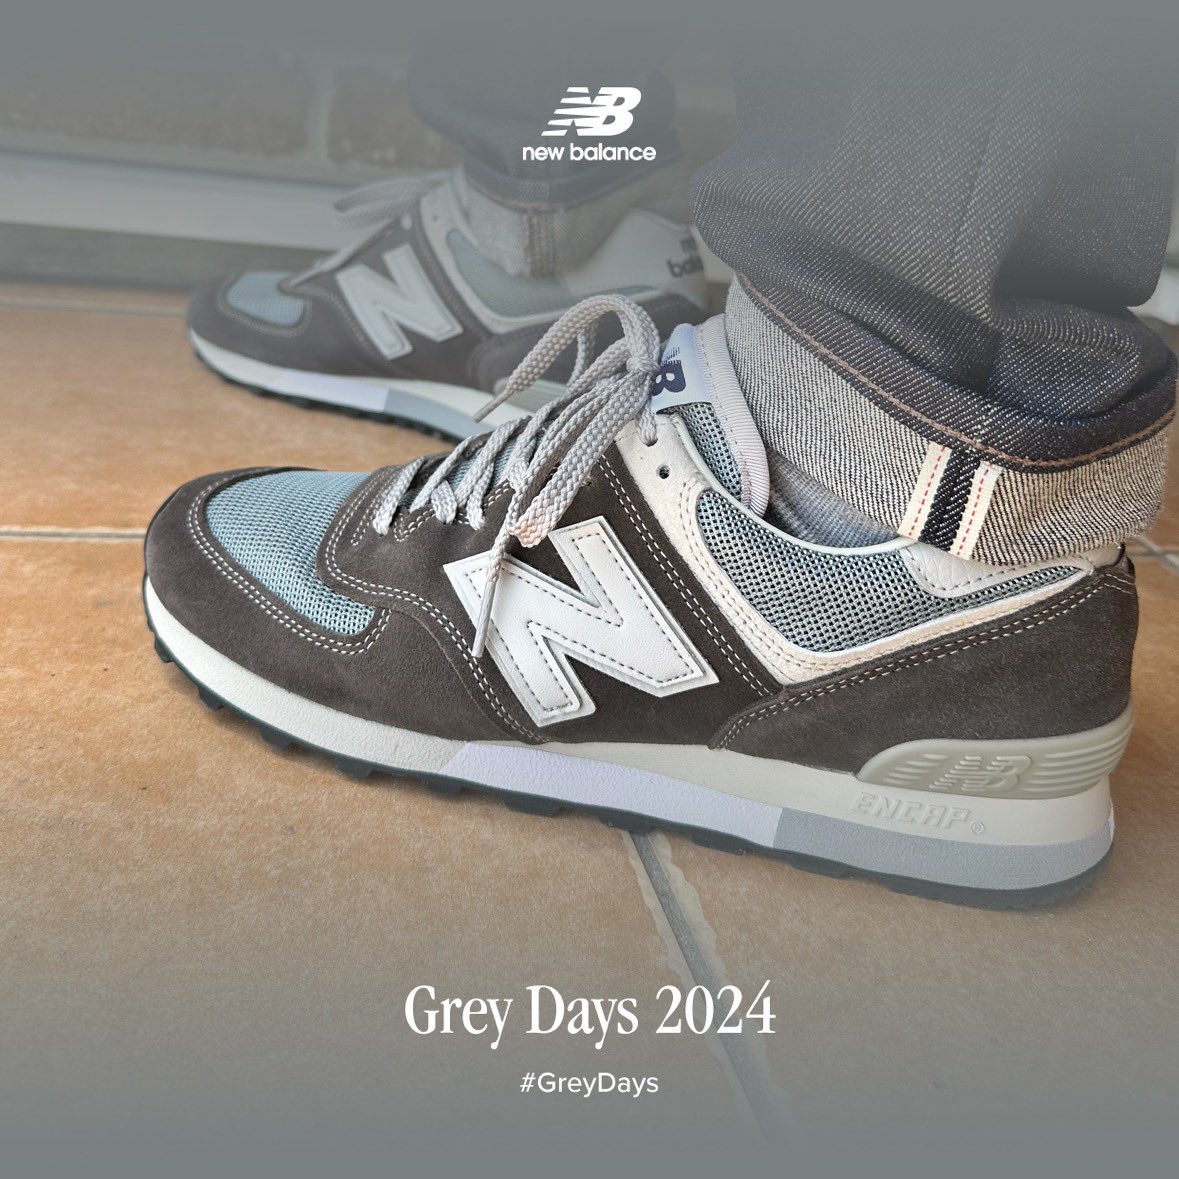 今日はニューバランスのGrayDayなので公式のフォトフレームで遊んでる
最近お気に入りのグレーのスニーカー達
 #grayday2024  #NewBalance